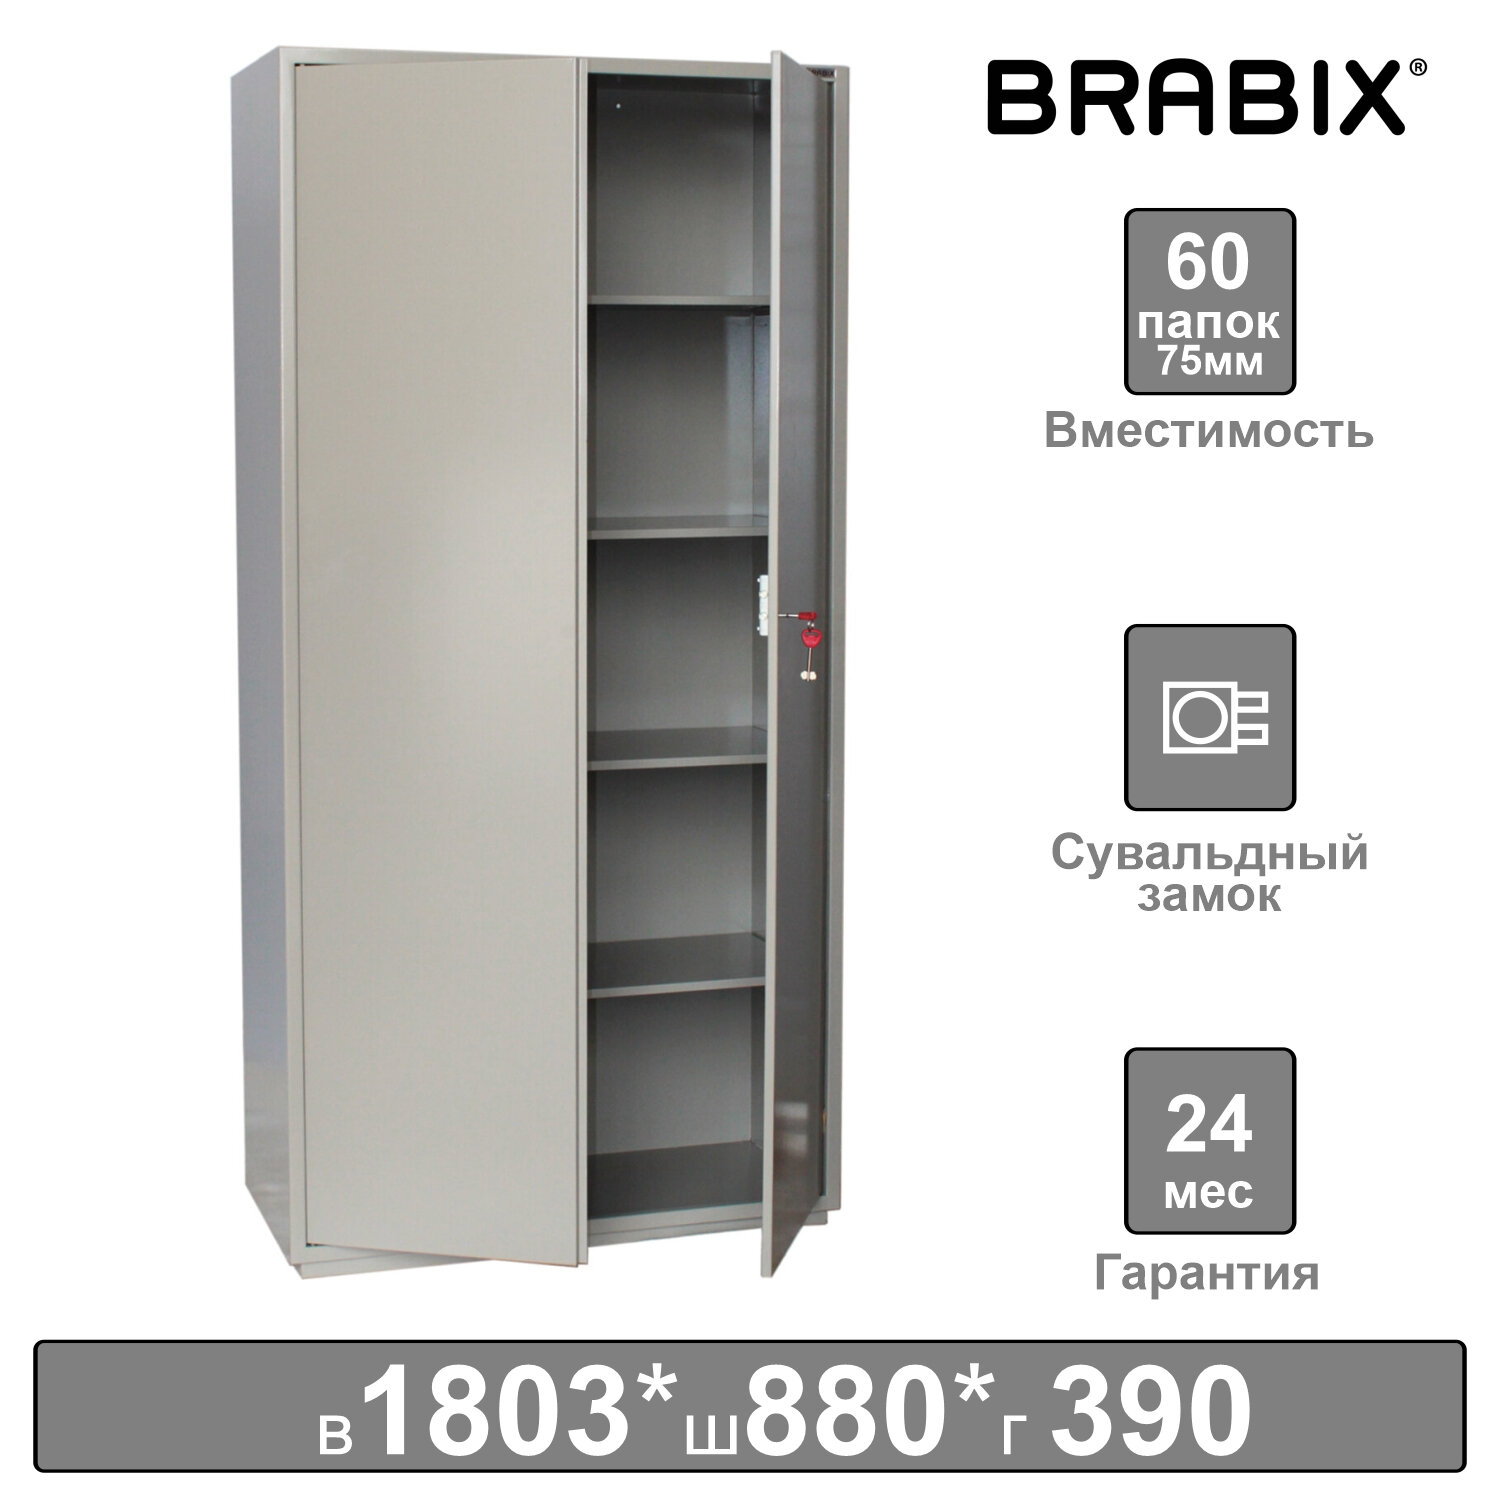 Brabix     BRABIX KBS-10, 1803880390 , 77 , 2 , , 291159